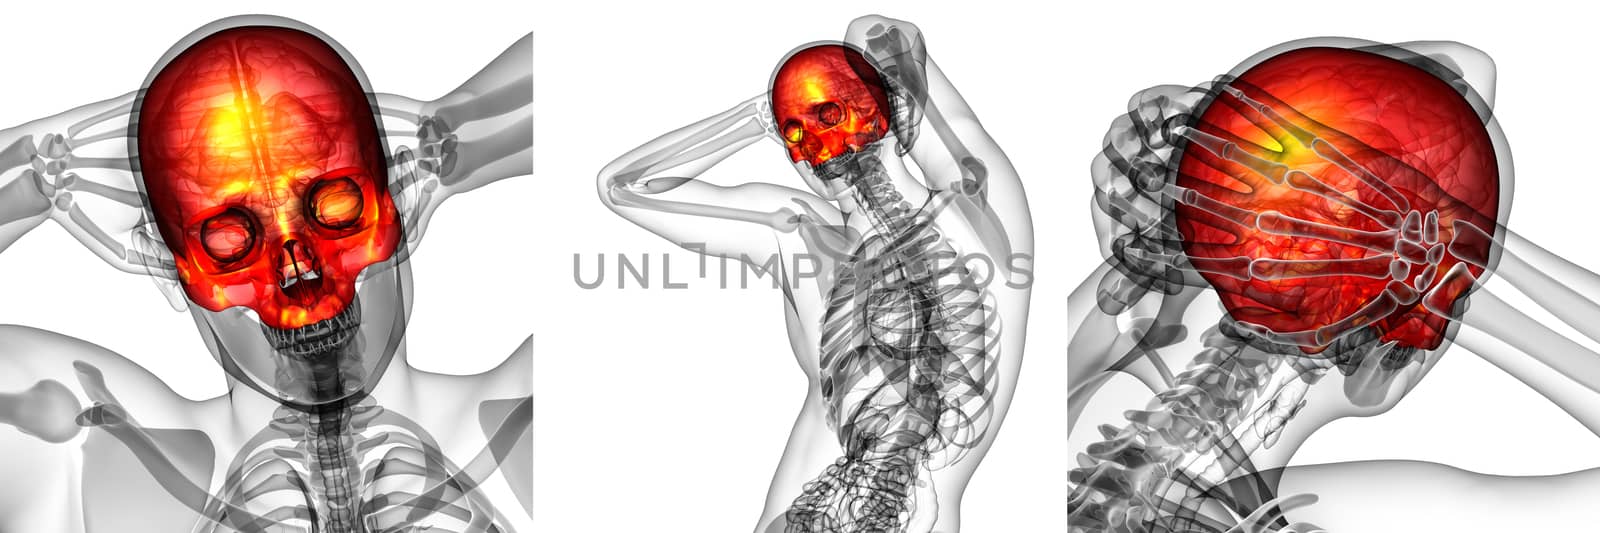 3d rendering medical illustration of the upper skull  by maya2008